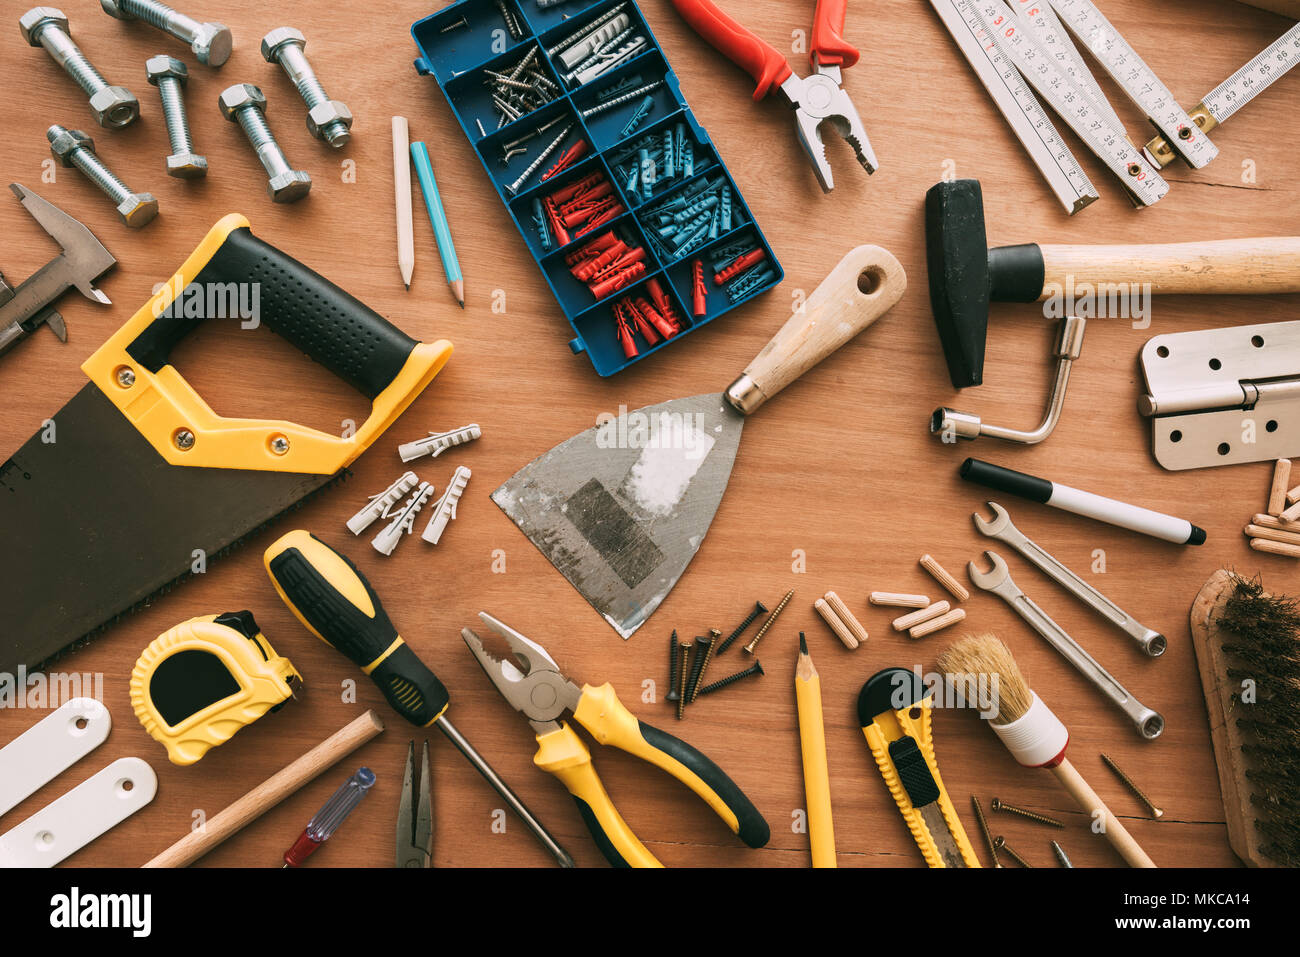 Repairman manutenzione e lavori di casa strumenti di progetto workshop sulla scrivania, vista dall'alto Foto Stock